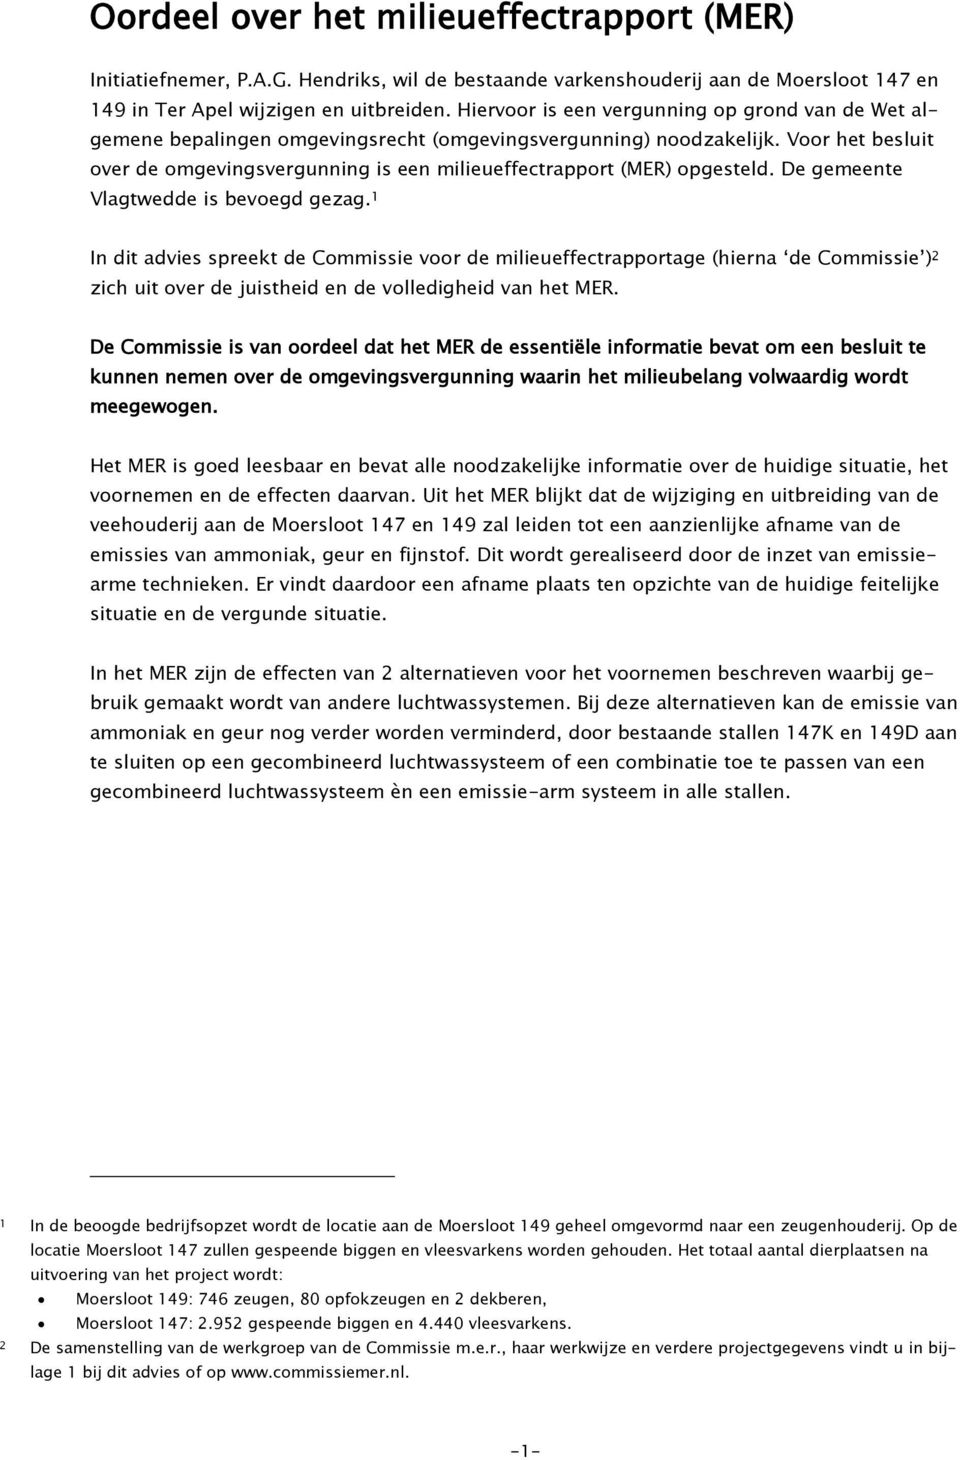 Voor het besluit over de omgevingsvergunning is een milieueffectrapport (MER) opgesteld. De gemeente Vlagtwedde is bevoegd gezag.